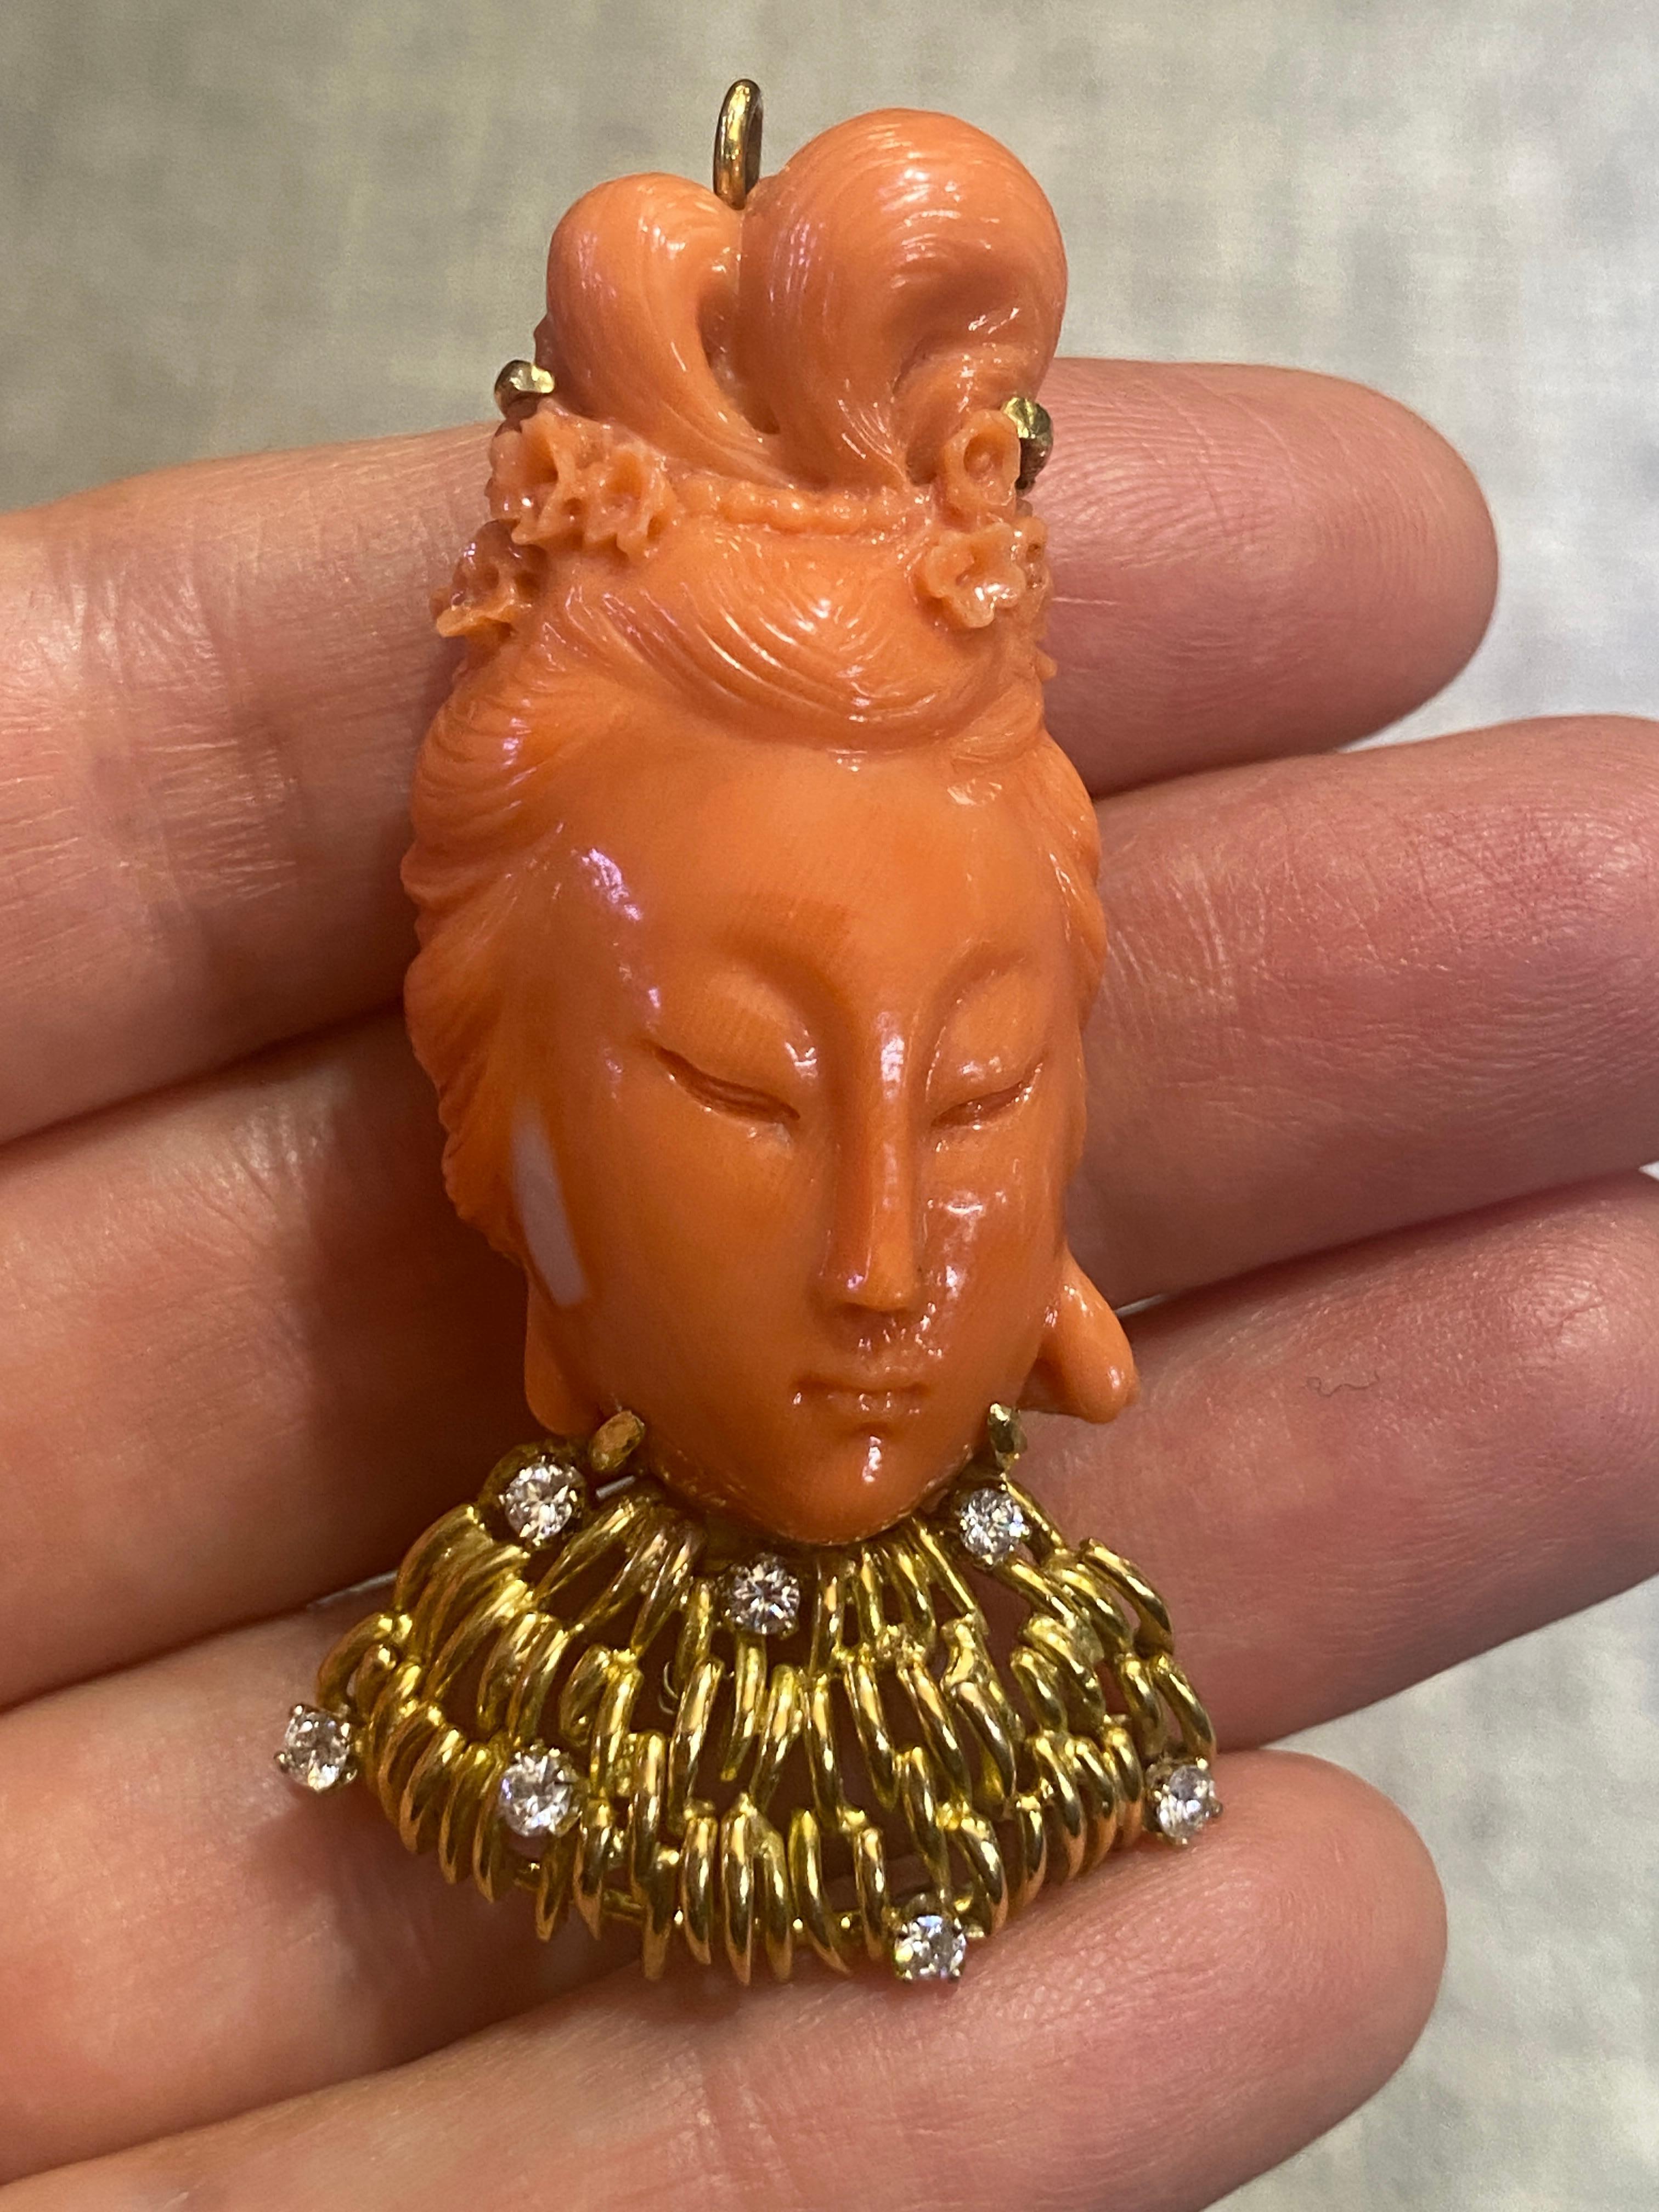 Cette magnifique broche femme Bouddha en corail sculpté présente un chignon délicatement sculpté, orné de perles et de petites fleurs. Le collier est en or 14 carats, orné de 7 diamants ronds d'une valeur totale d'environ 0,35 carat. La broche est